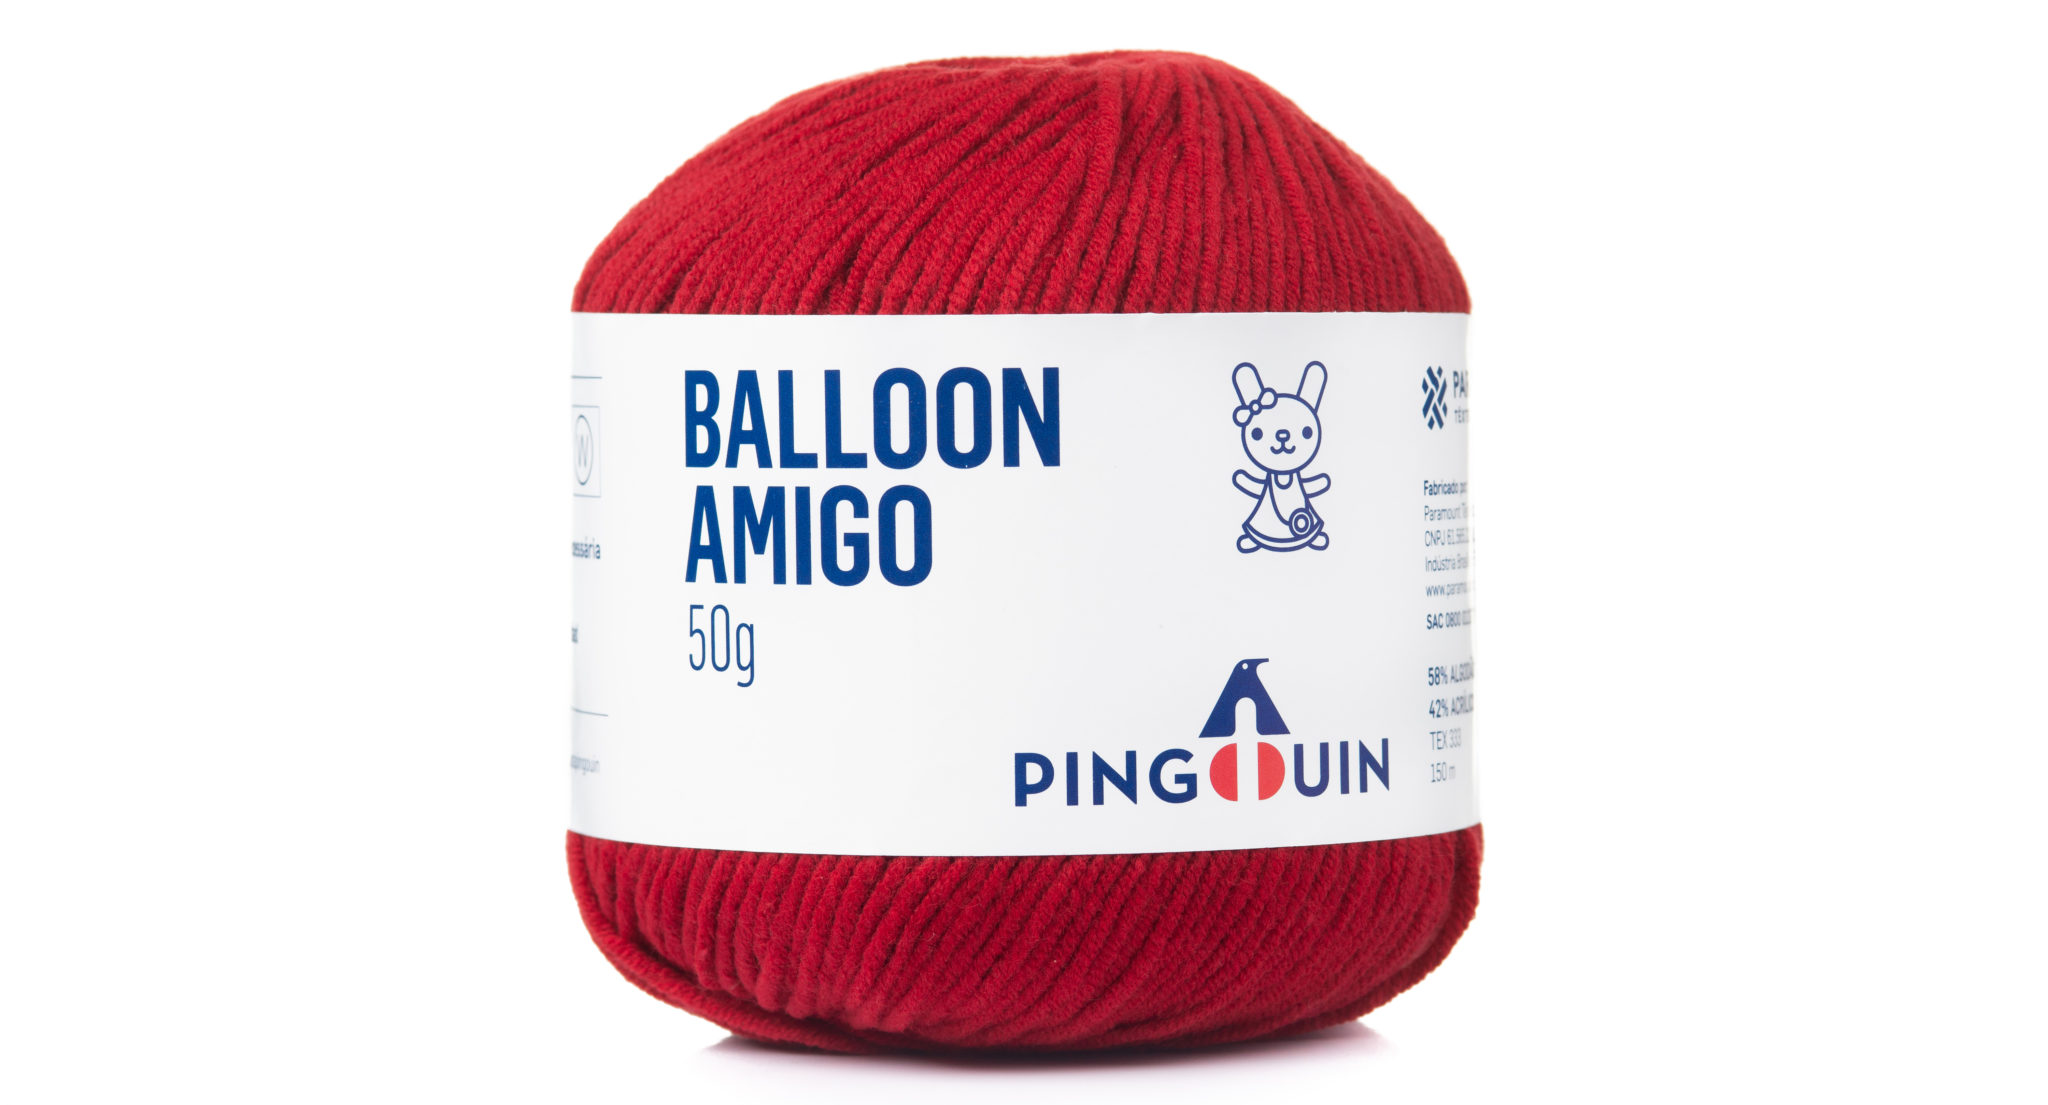 1714160275 512 Receita Pinguim Amigurumi Fio Balloon Amigo e Bocaina Armarinho